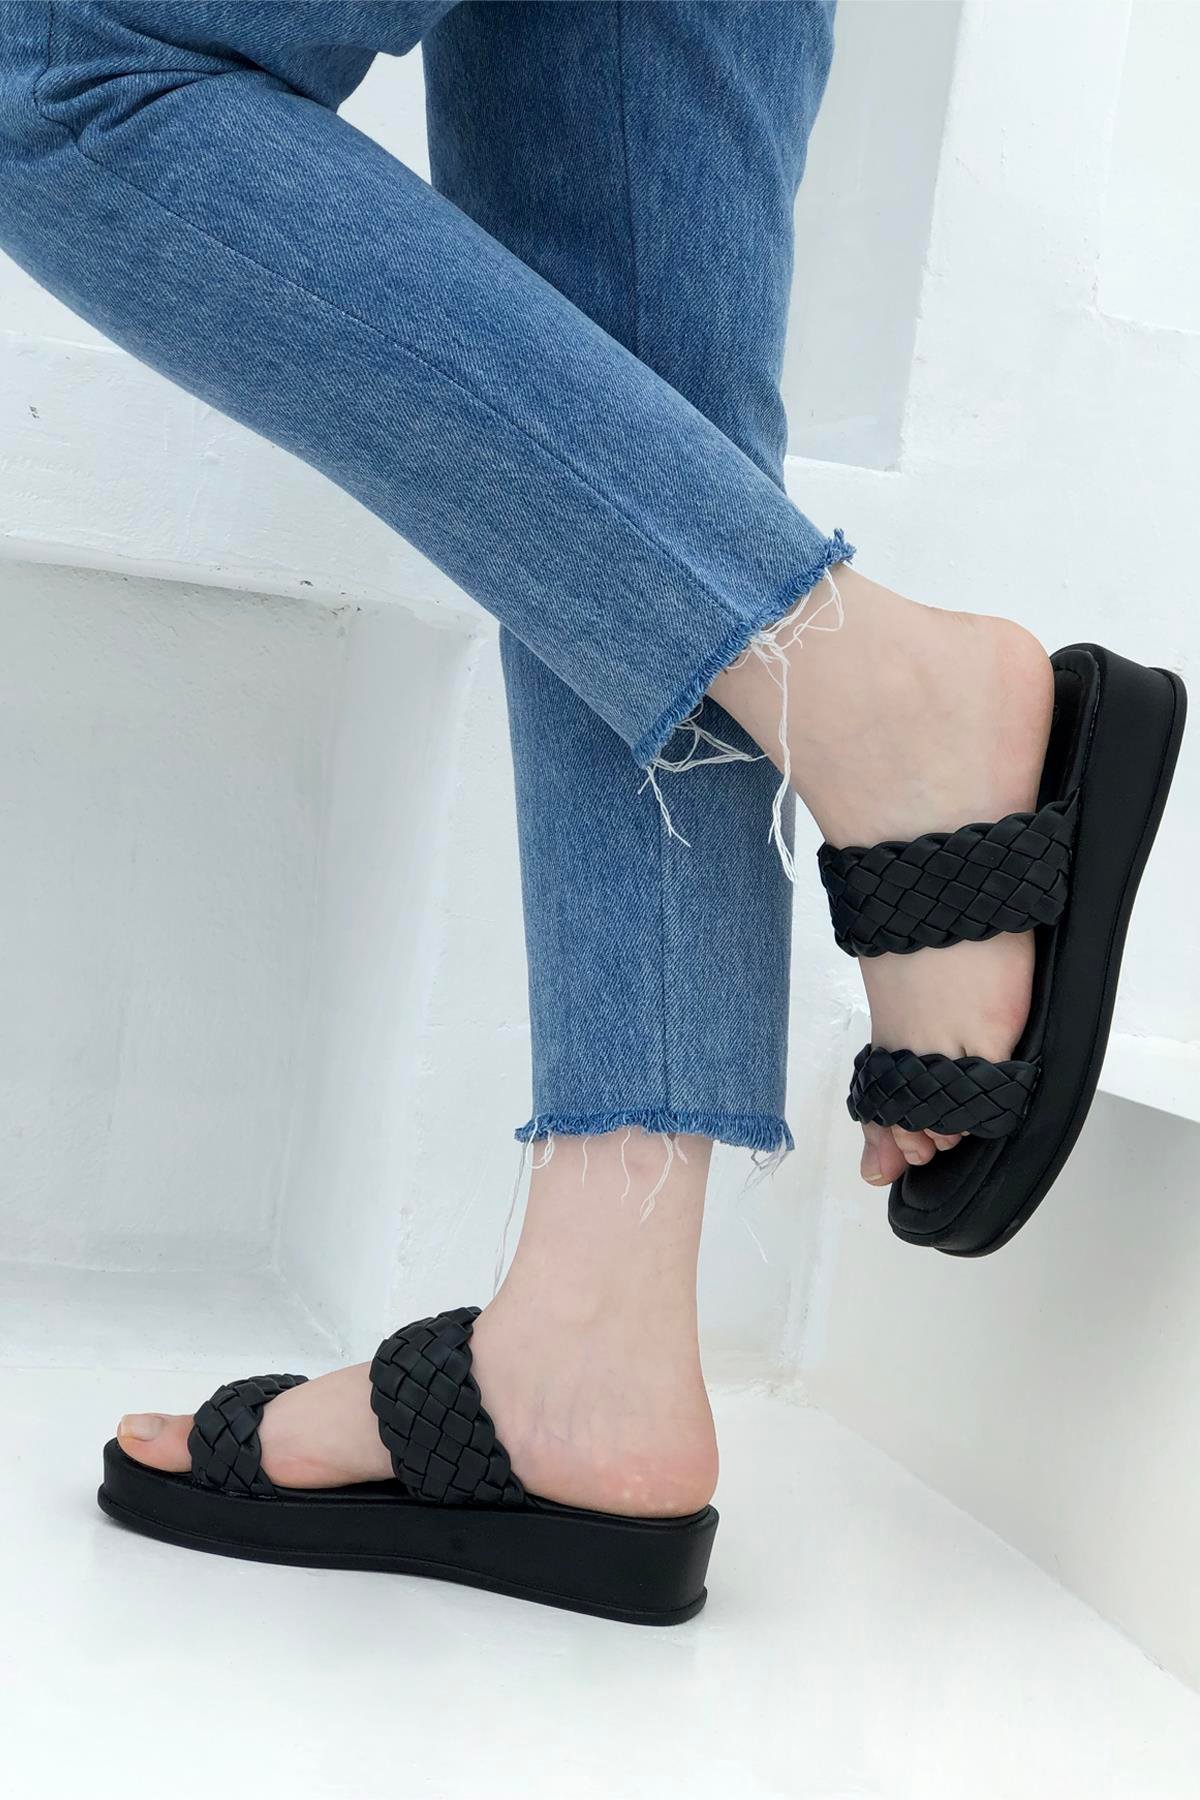 Örgü Bantlı Yüksek Taban Kadın Terlik Siyah 2100 Pienn | Mybella Shoes